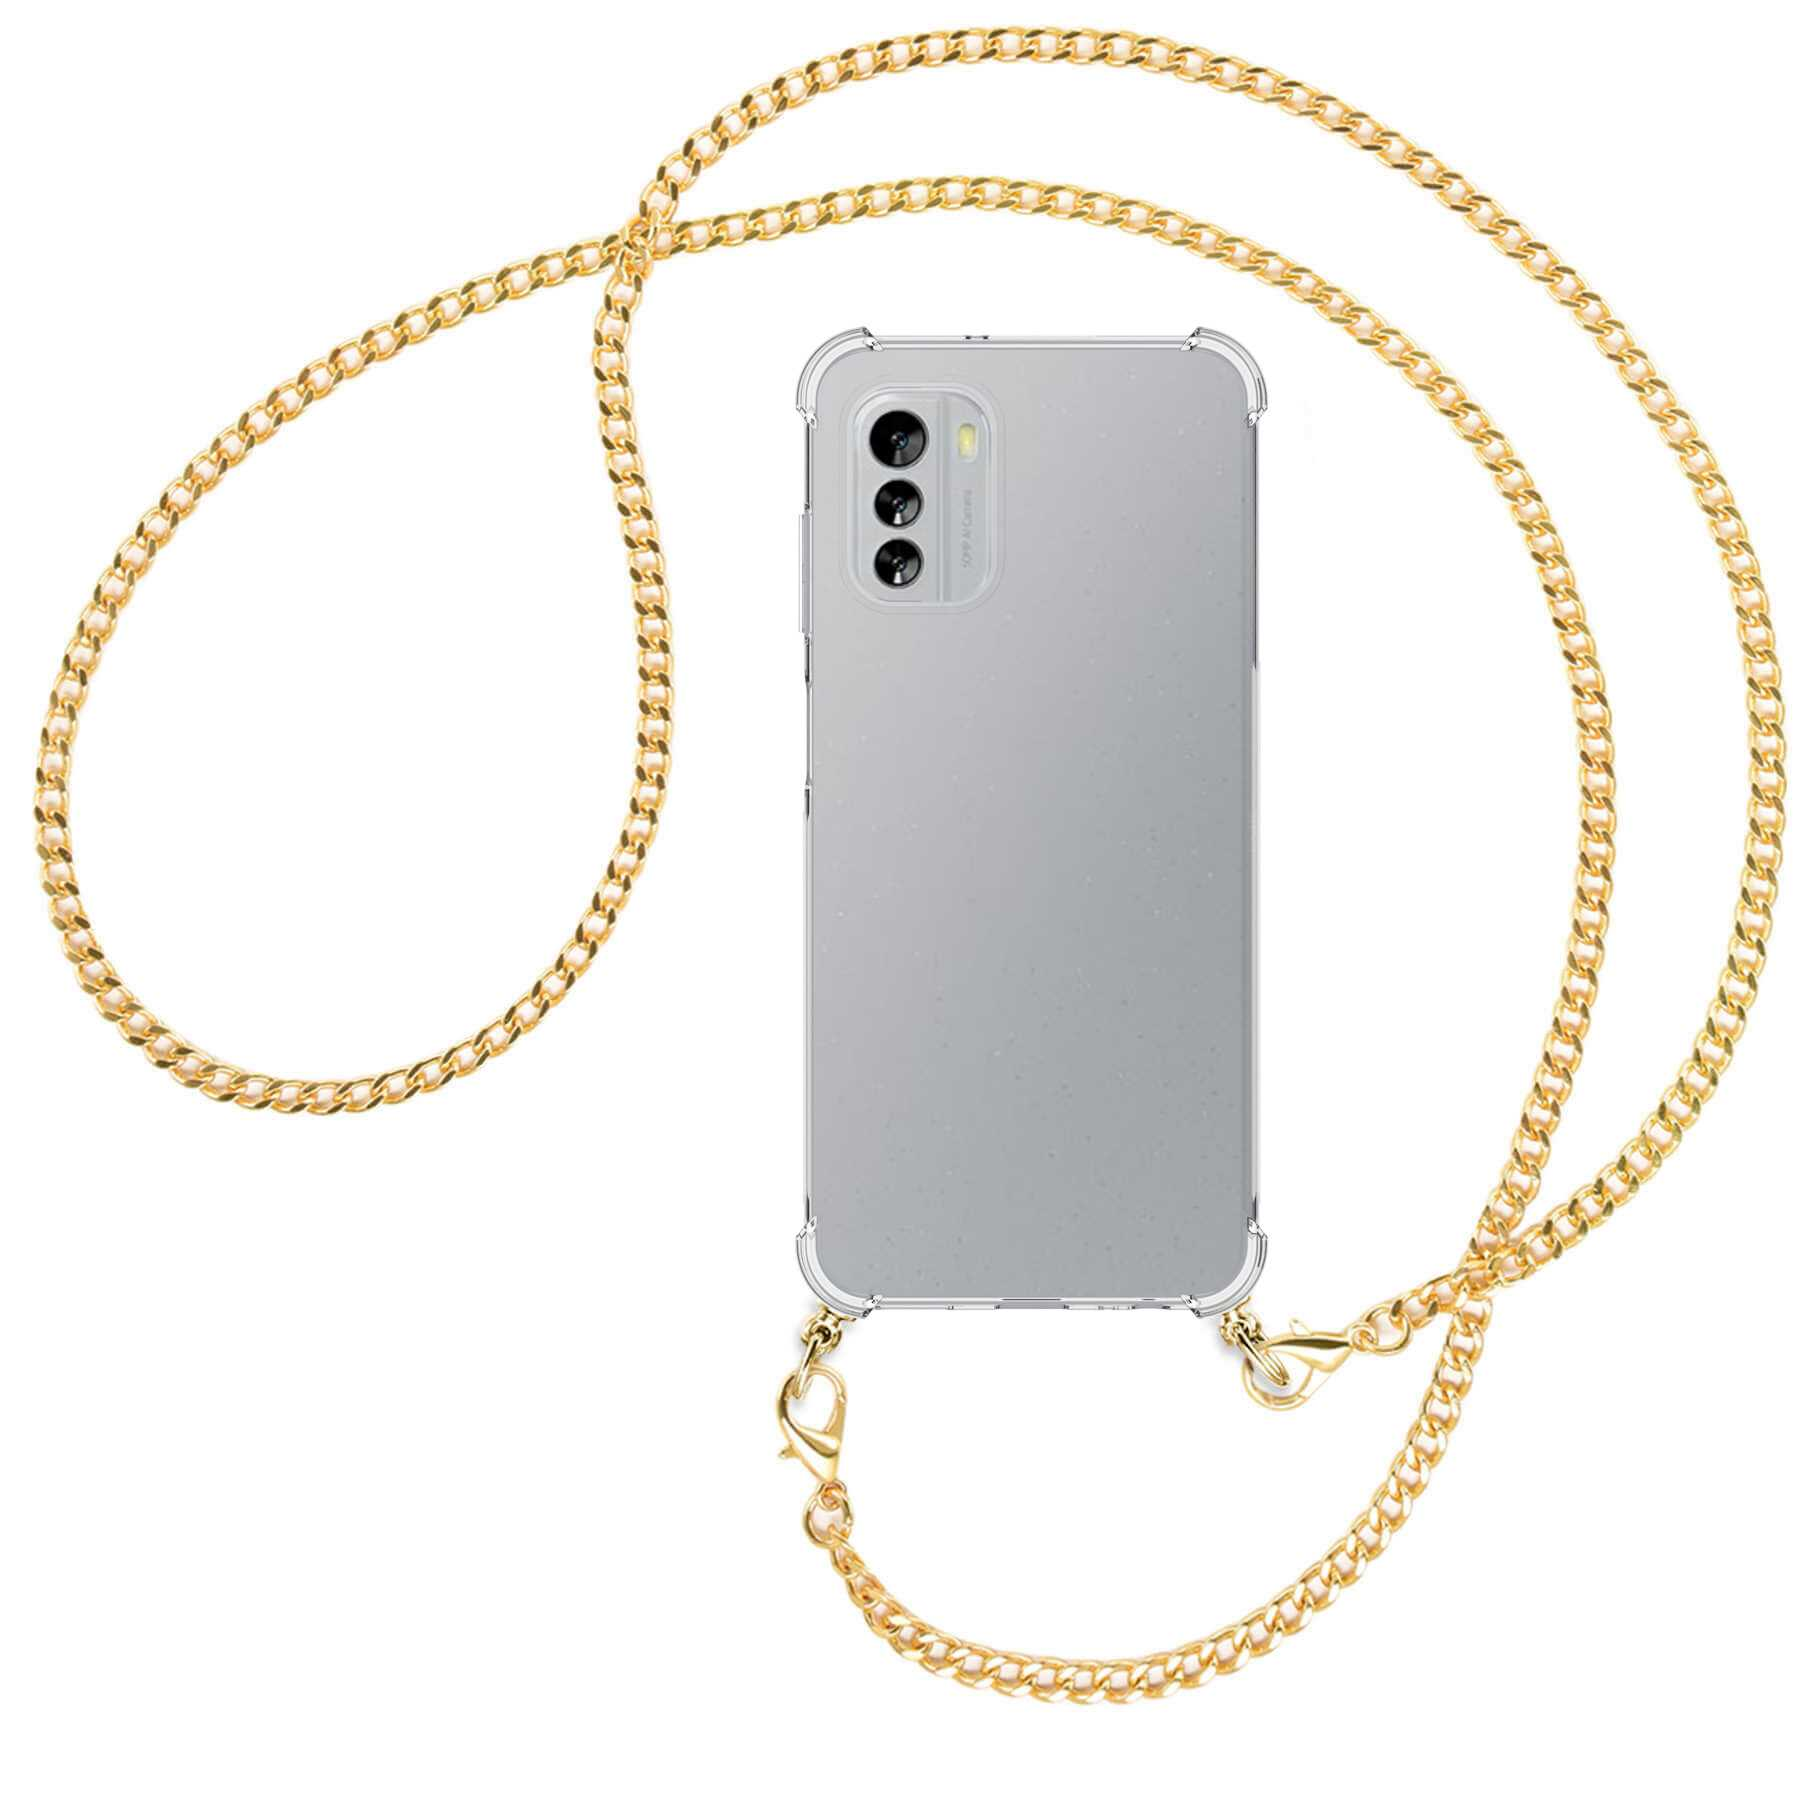 MTB MORE ENERGY Umhänge-Hülle mit Backcover, (gold) G60 Kette Metallkette, 5G, Nokia